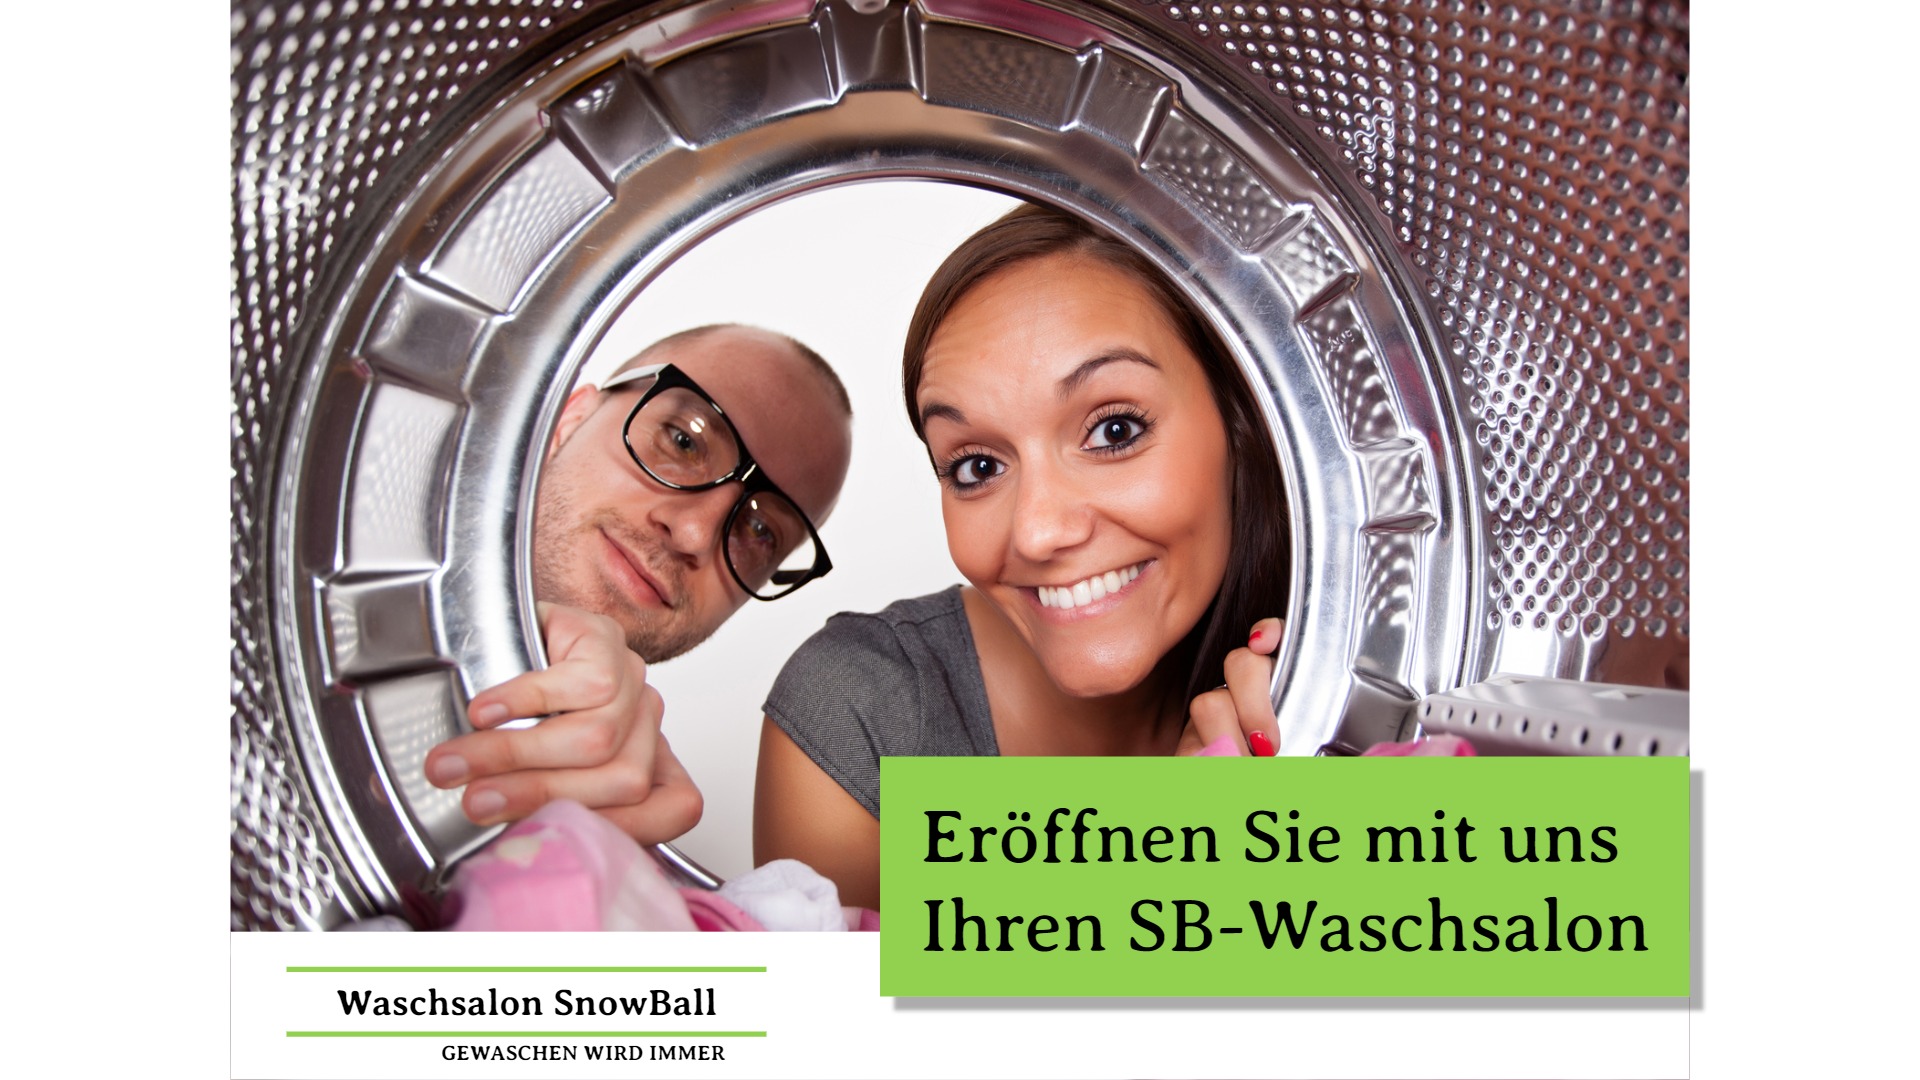 (c) Waschsalon-franchise.de